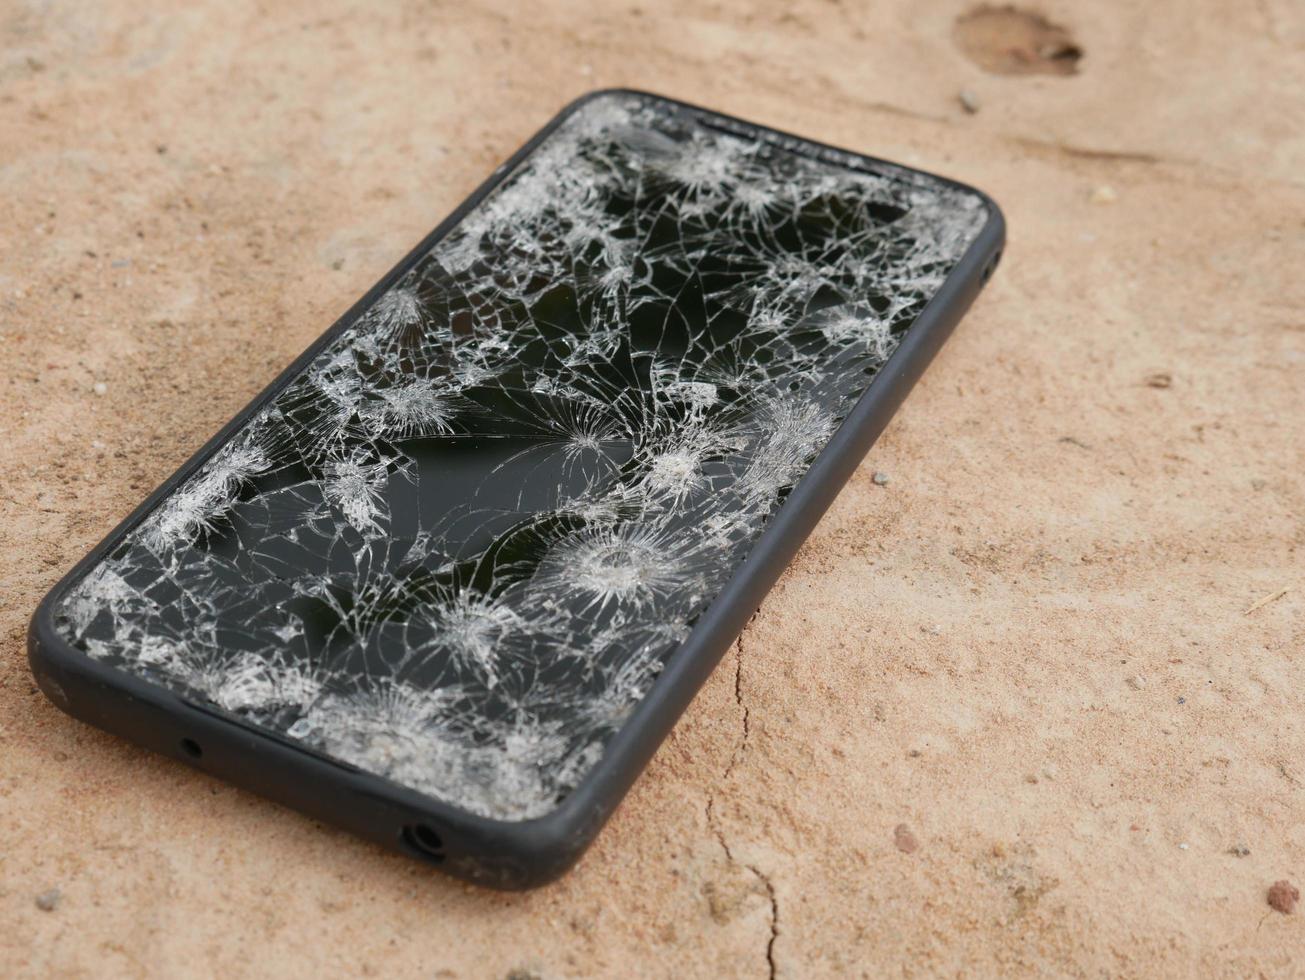 le smartphone a heurté le sol, il est tombé dans une fissure. photo